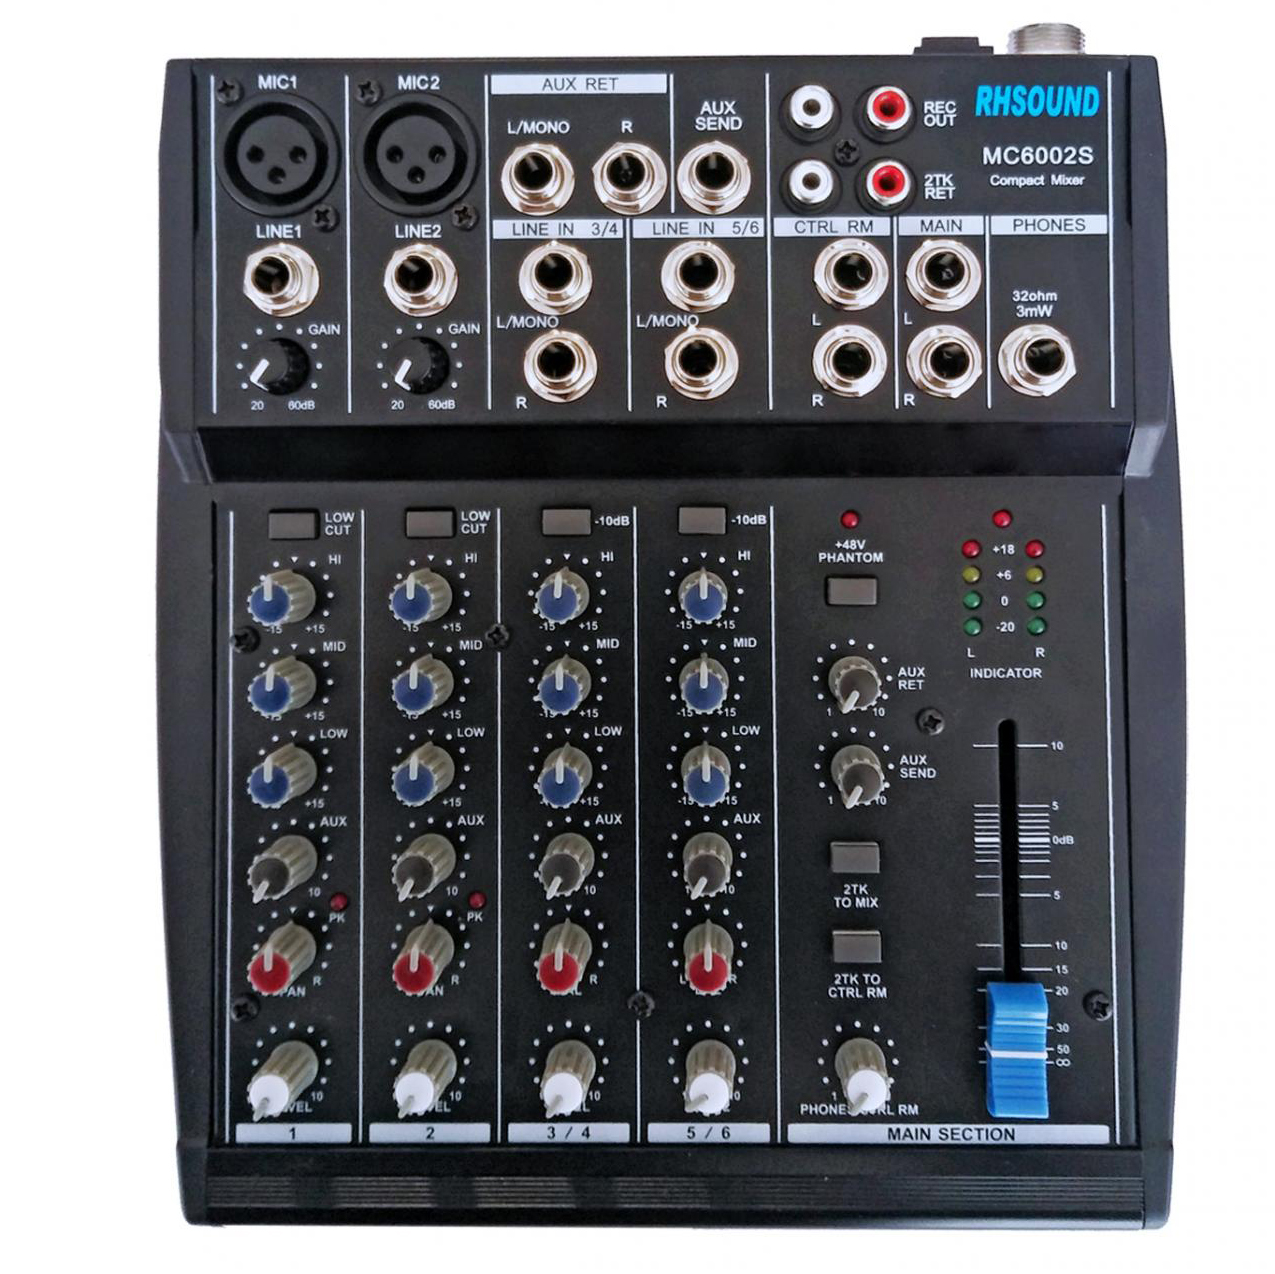 RH Sound MC 6002S | Obrázok 1 | eplay.sk